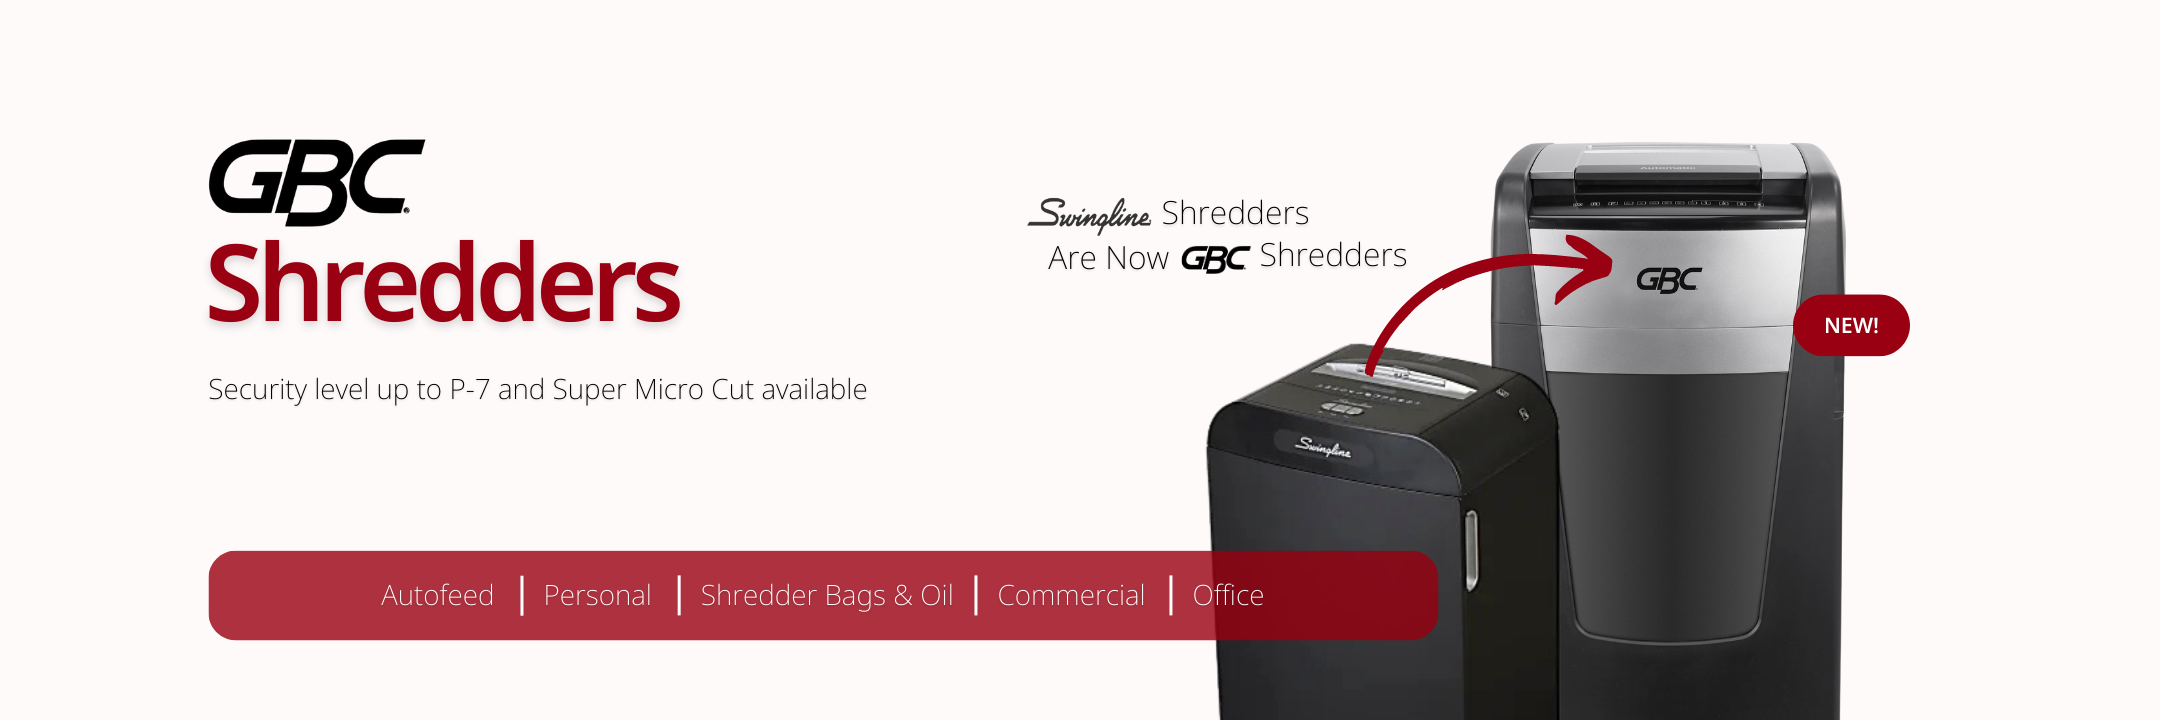 ACCO-GBC-Shredders-Desktop-Carousel-Banner-Slide-4